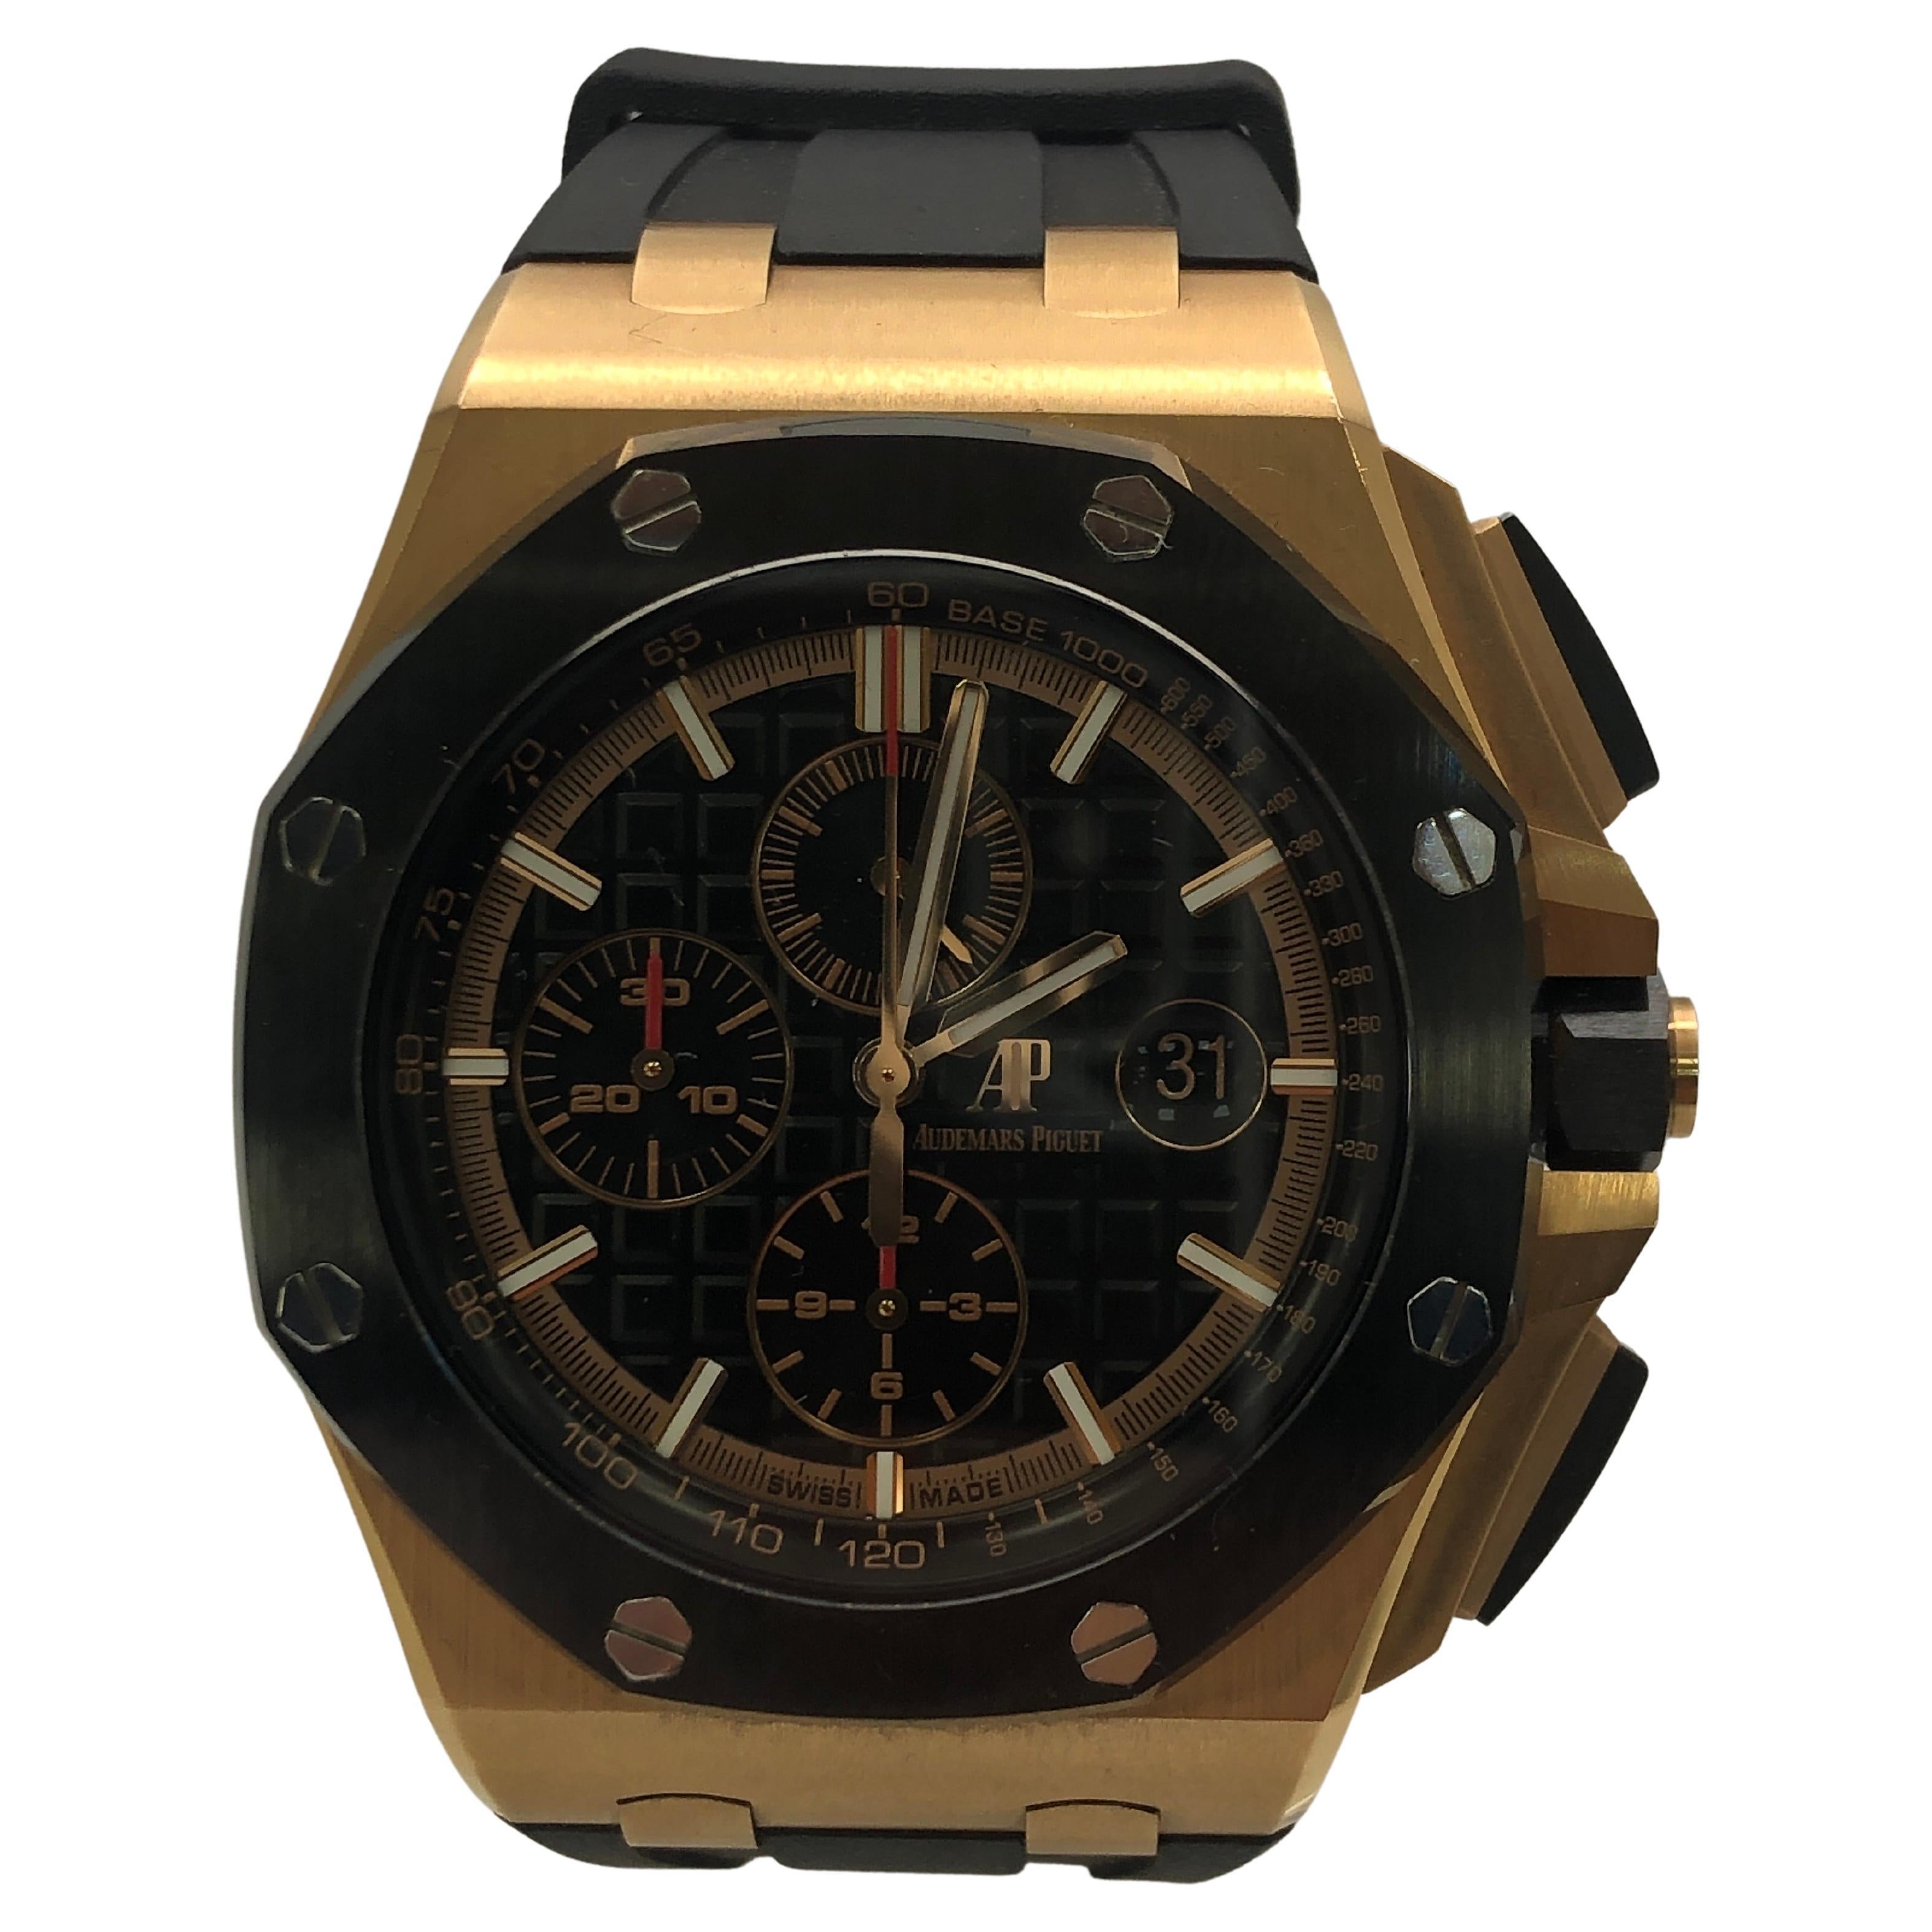 Audemars Piguet Royal Oak Offshore 18k Gold Watch